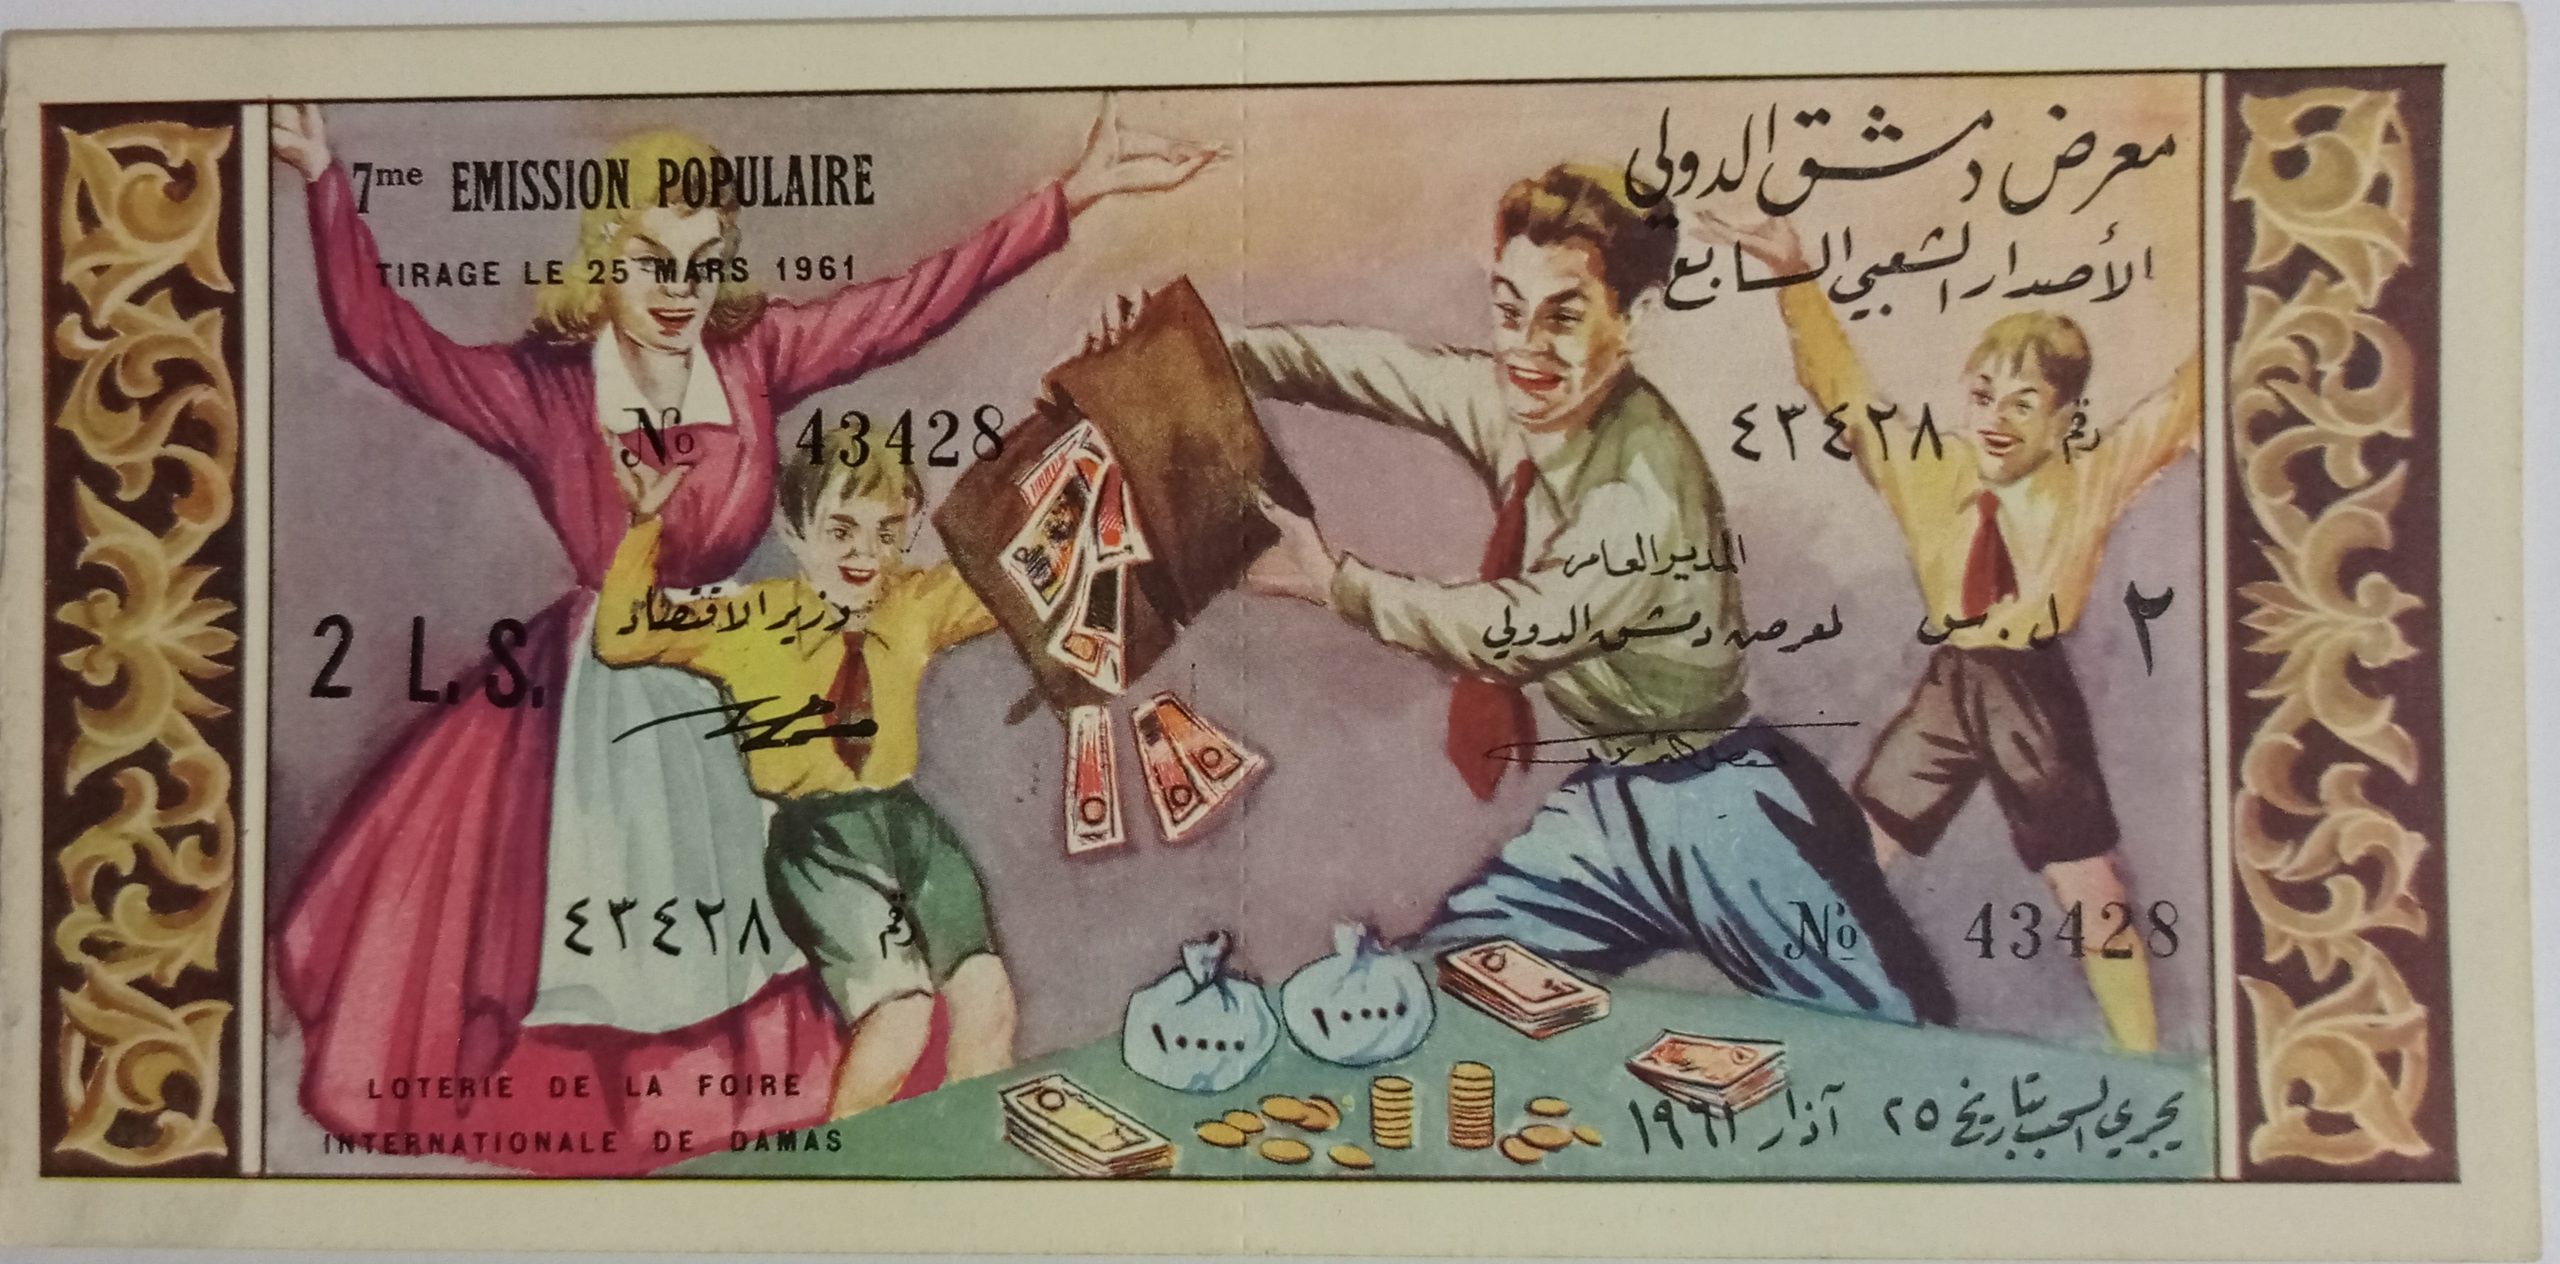 التاريخ السوري المعاصر - يانصيب معرض دمشق الدولي - الإصدار الشعبي السابع عام 1961